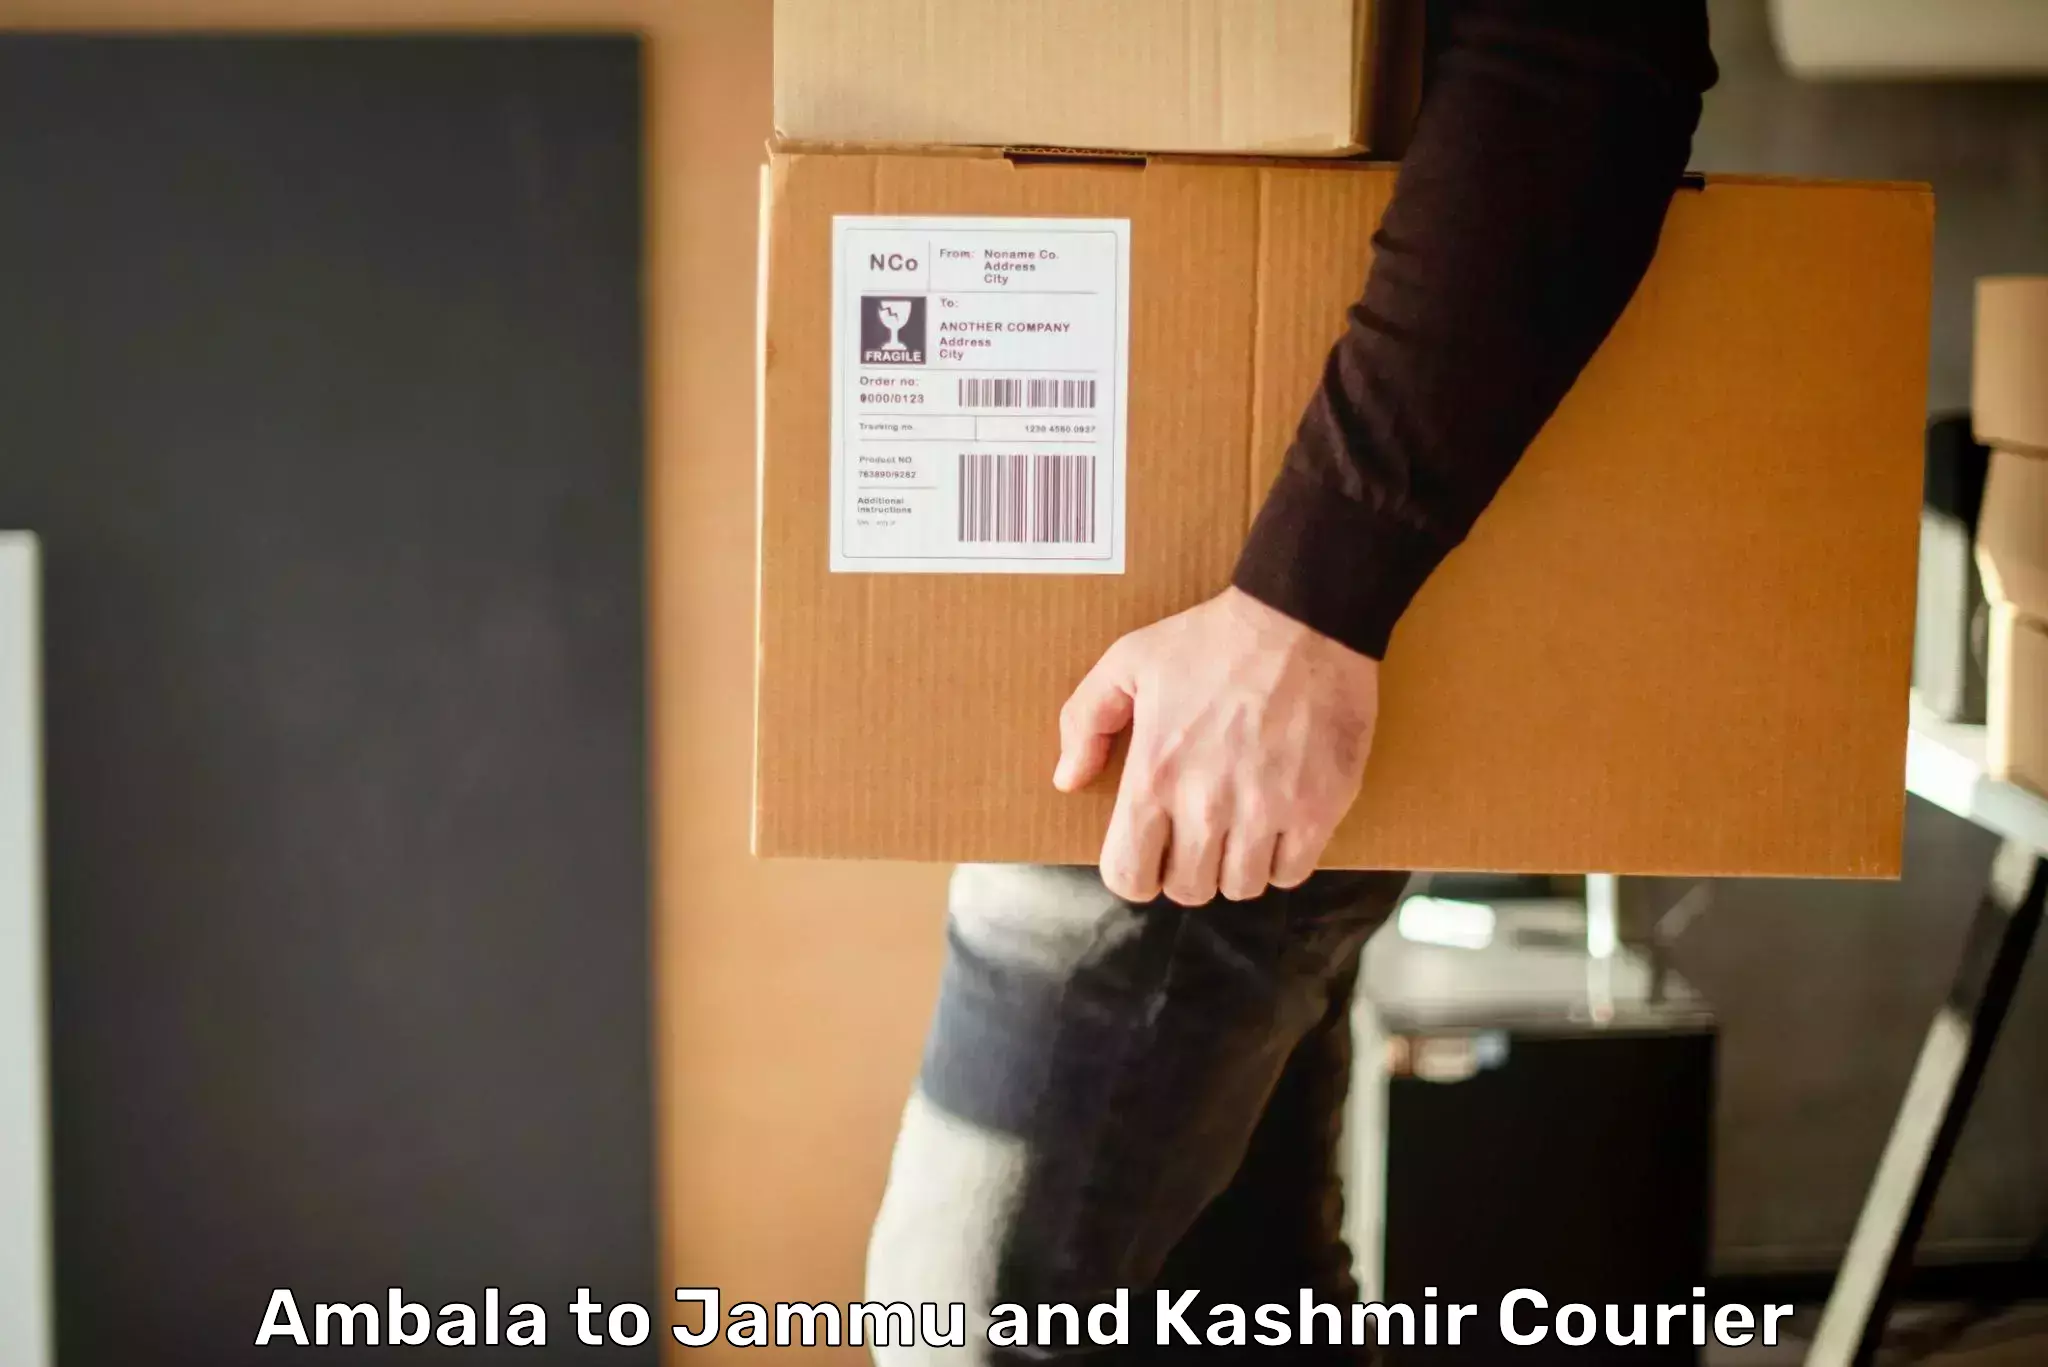 Express logistics in Ambala to Jammu and Kashmir